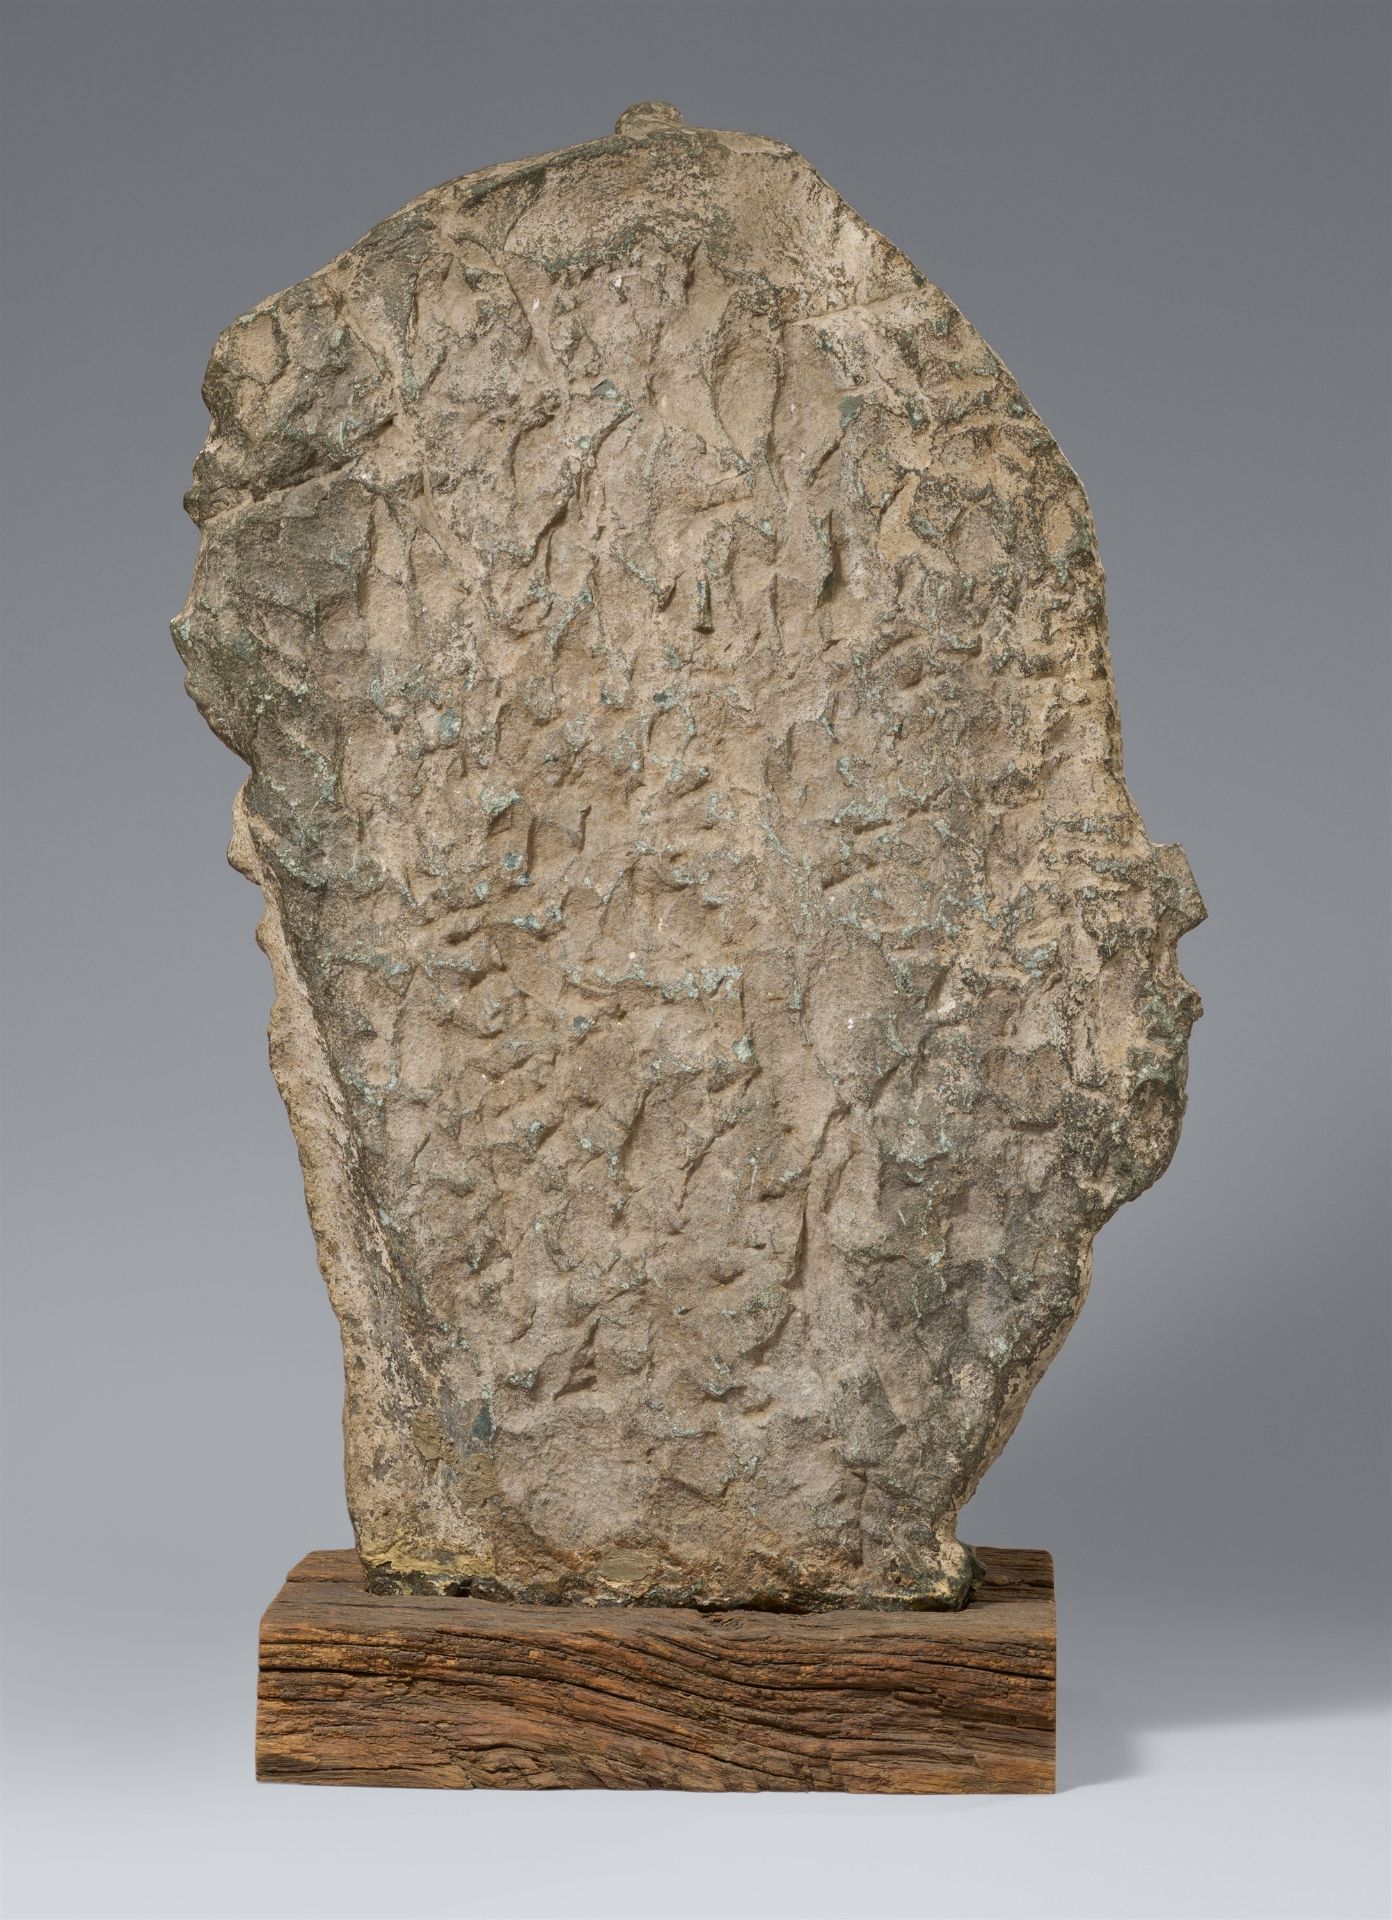 Große Stele des Parshvanatha. Stein. Indien, wohl Madhya Pradesh. 9./10. Jh. - Bild 2 aus 6